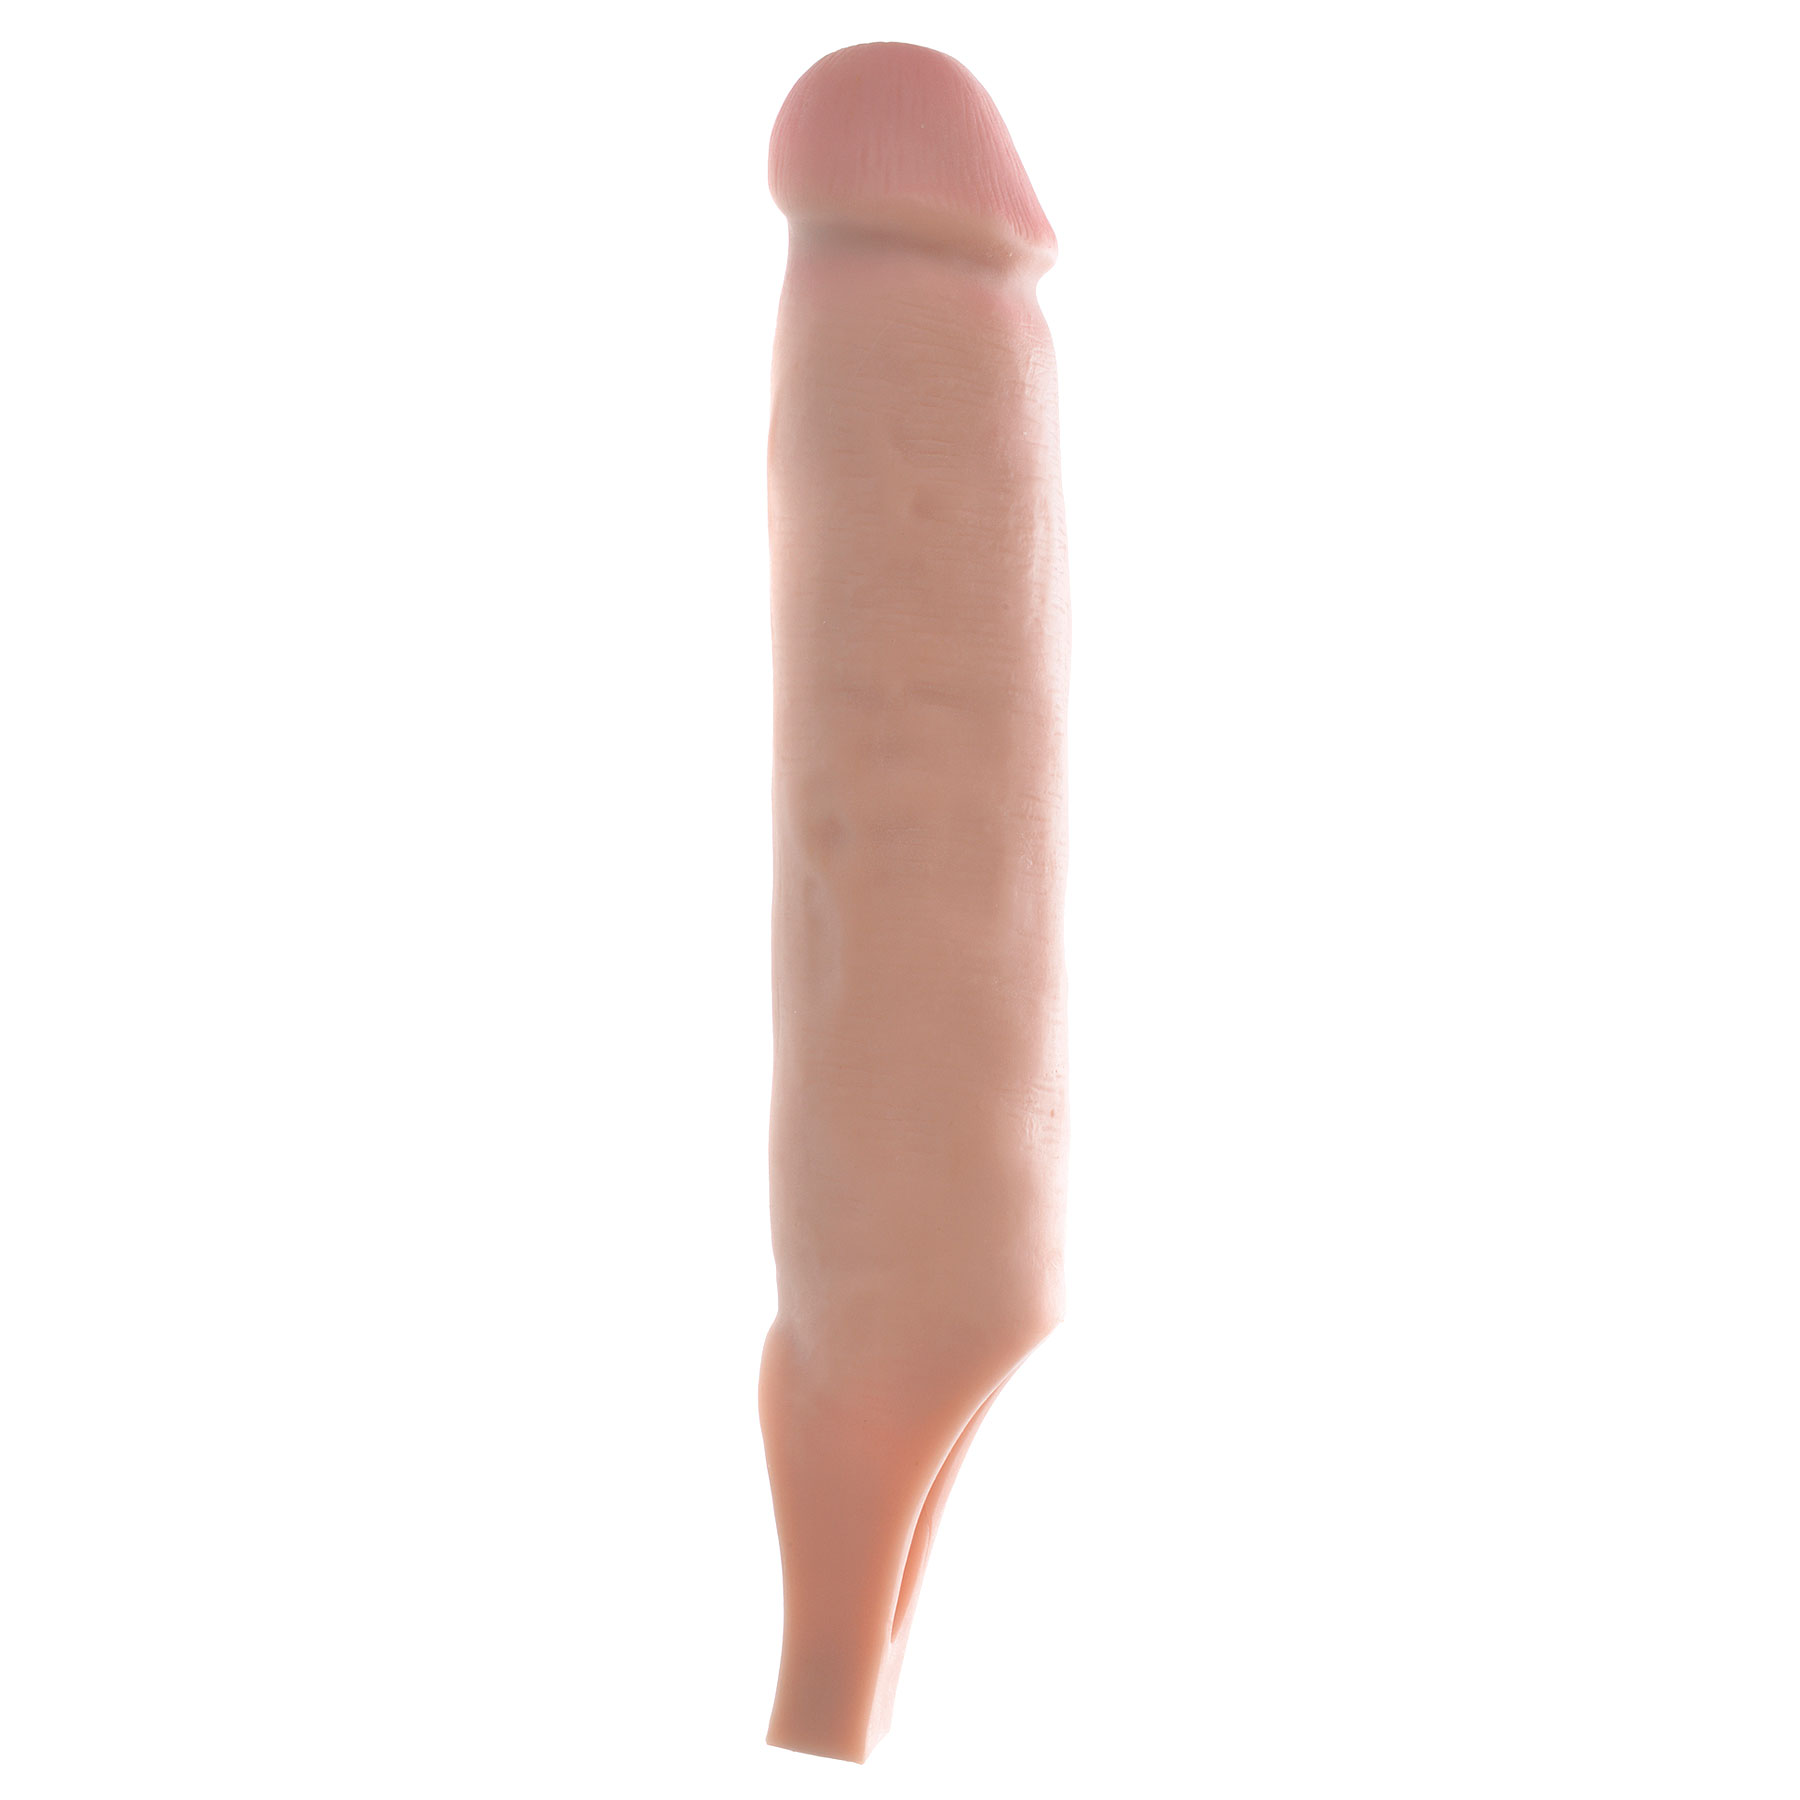 Penis Sleeves On Penis